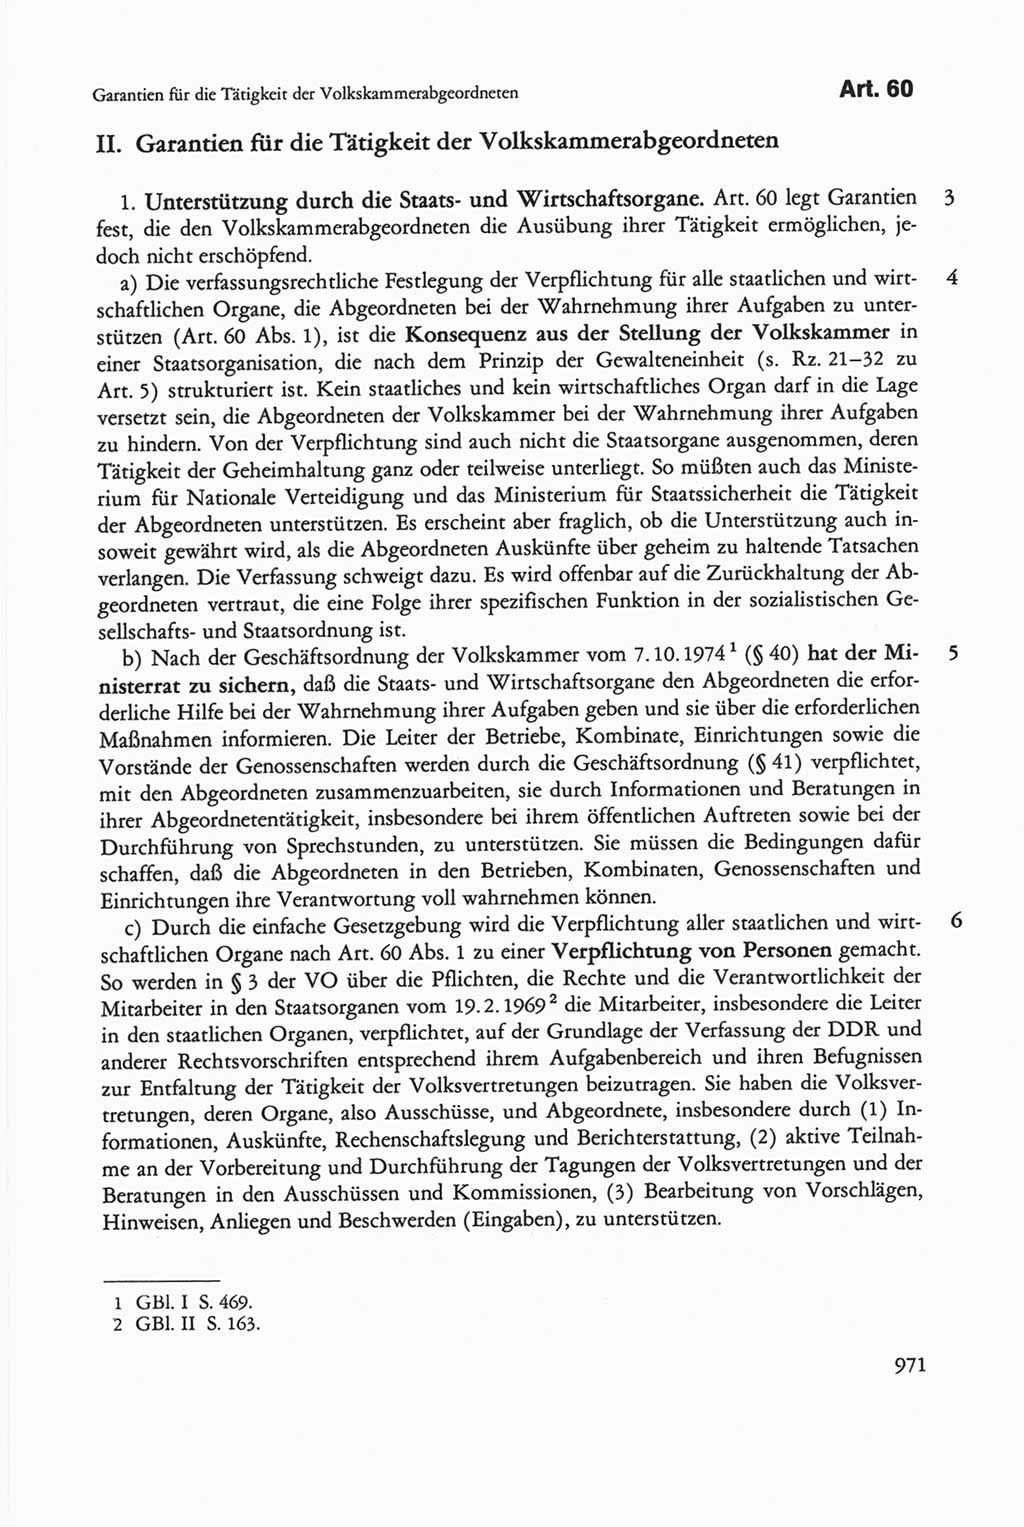 Die sozialistische Verfassung der Deutschen Demokratischen Republik (DDR), Kommentar 1982, Seite 971 (Soz. Verf. DDR Komm. 1982, S. 971)